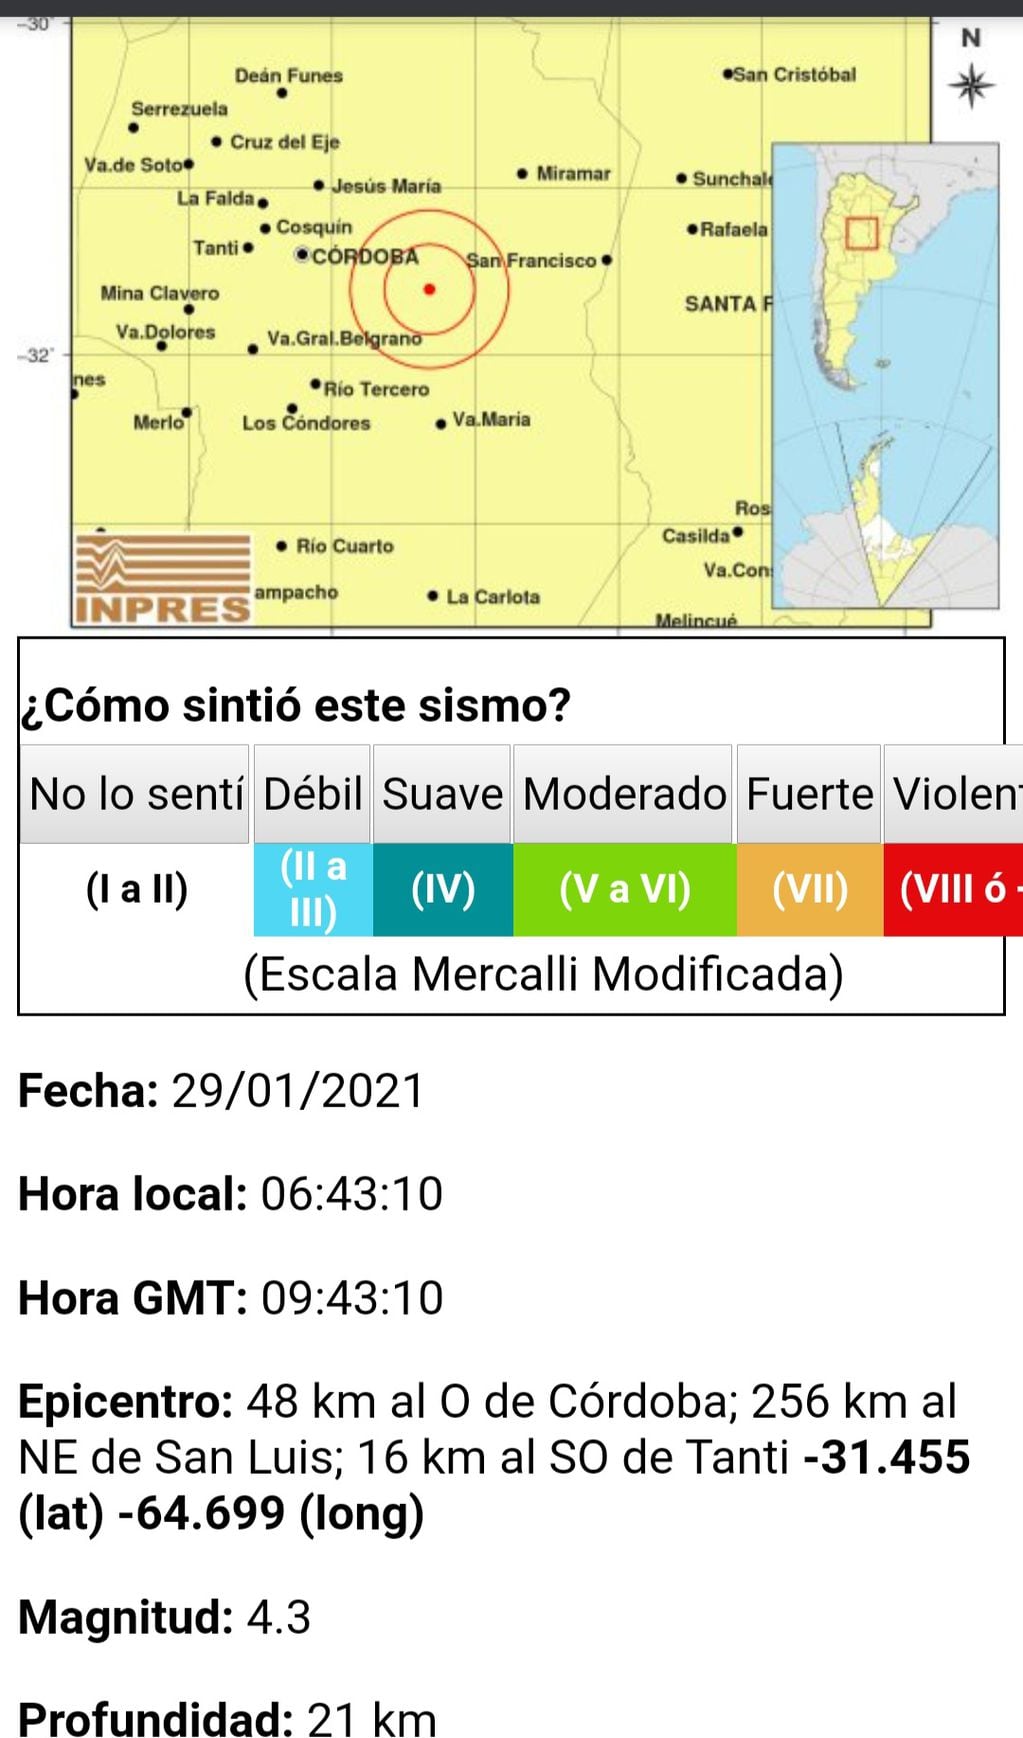 De acuerdo a los últimos datos actualizados por INPRES, el sismo fue de 4.3 de magnitud a 16 kilómetros al SO de Tanti.